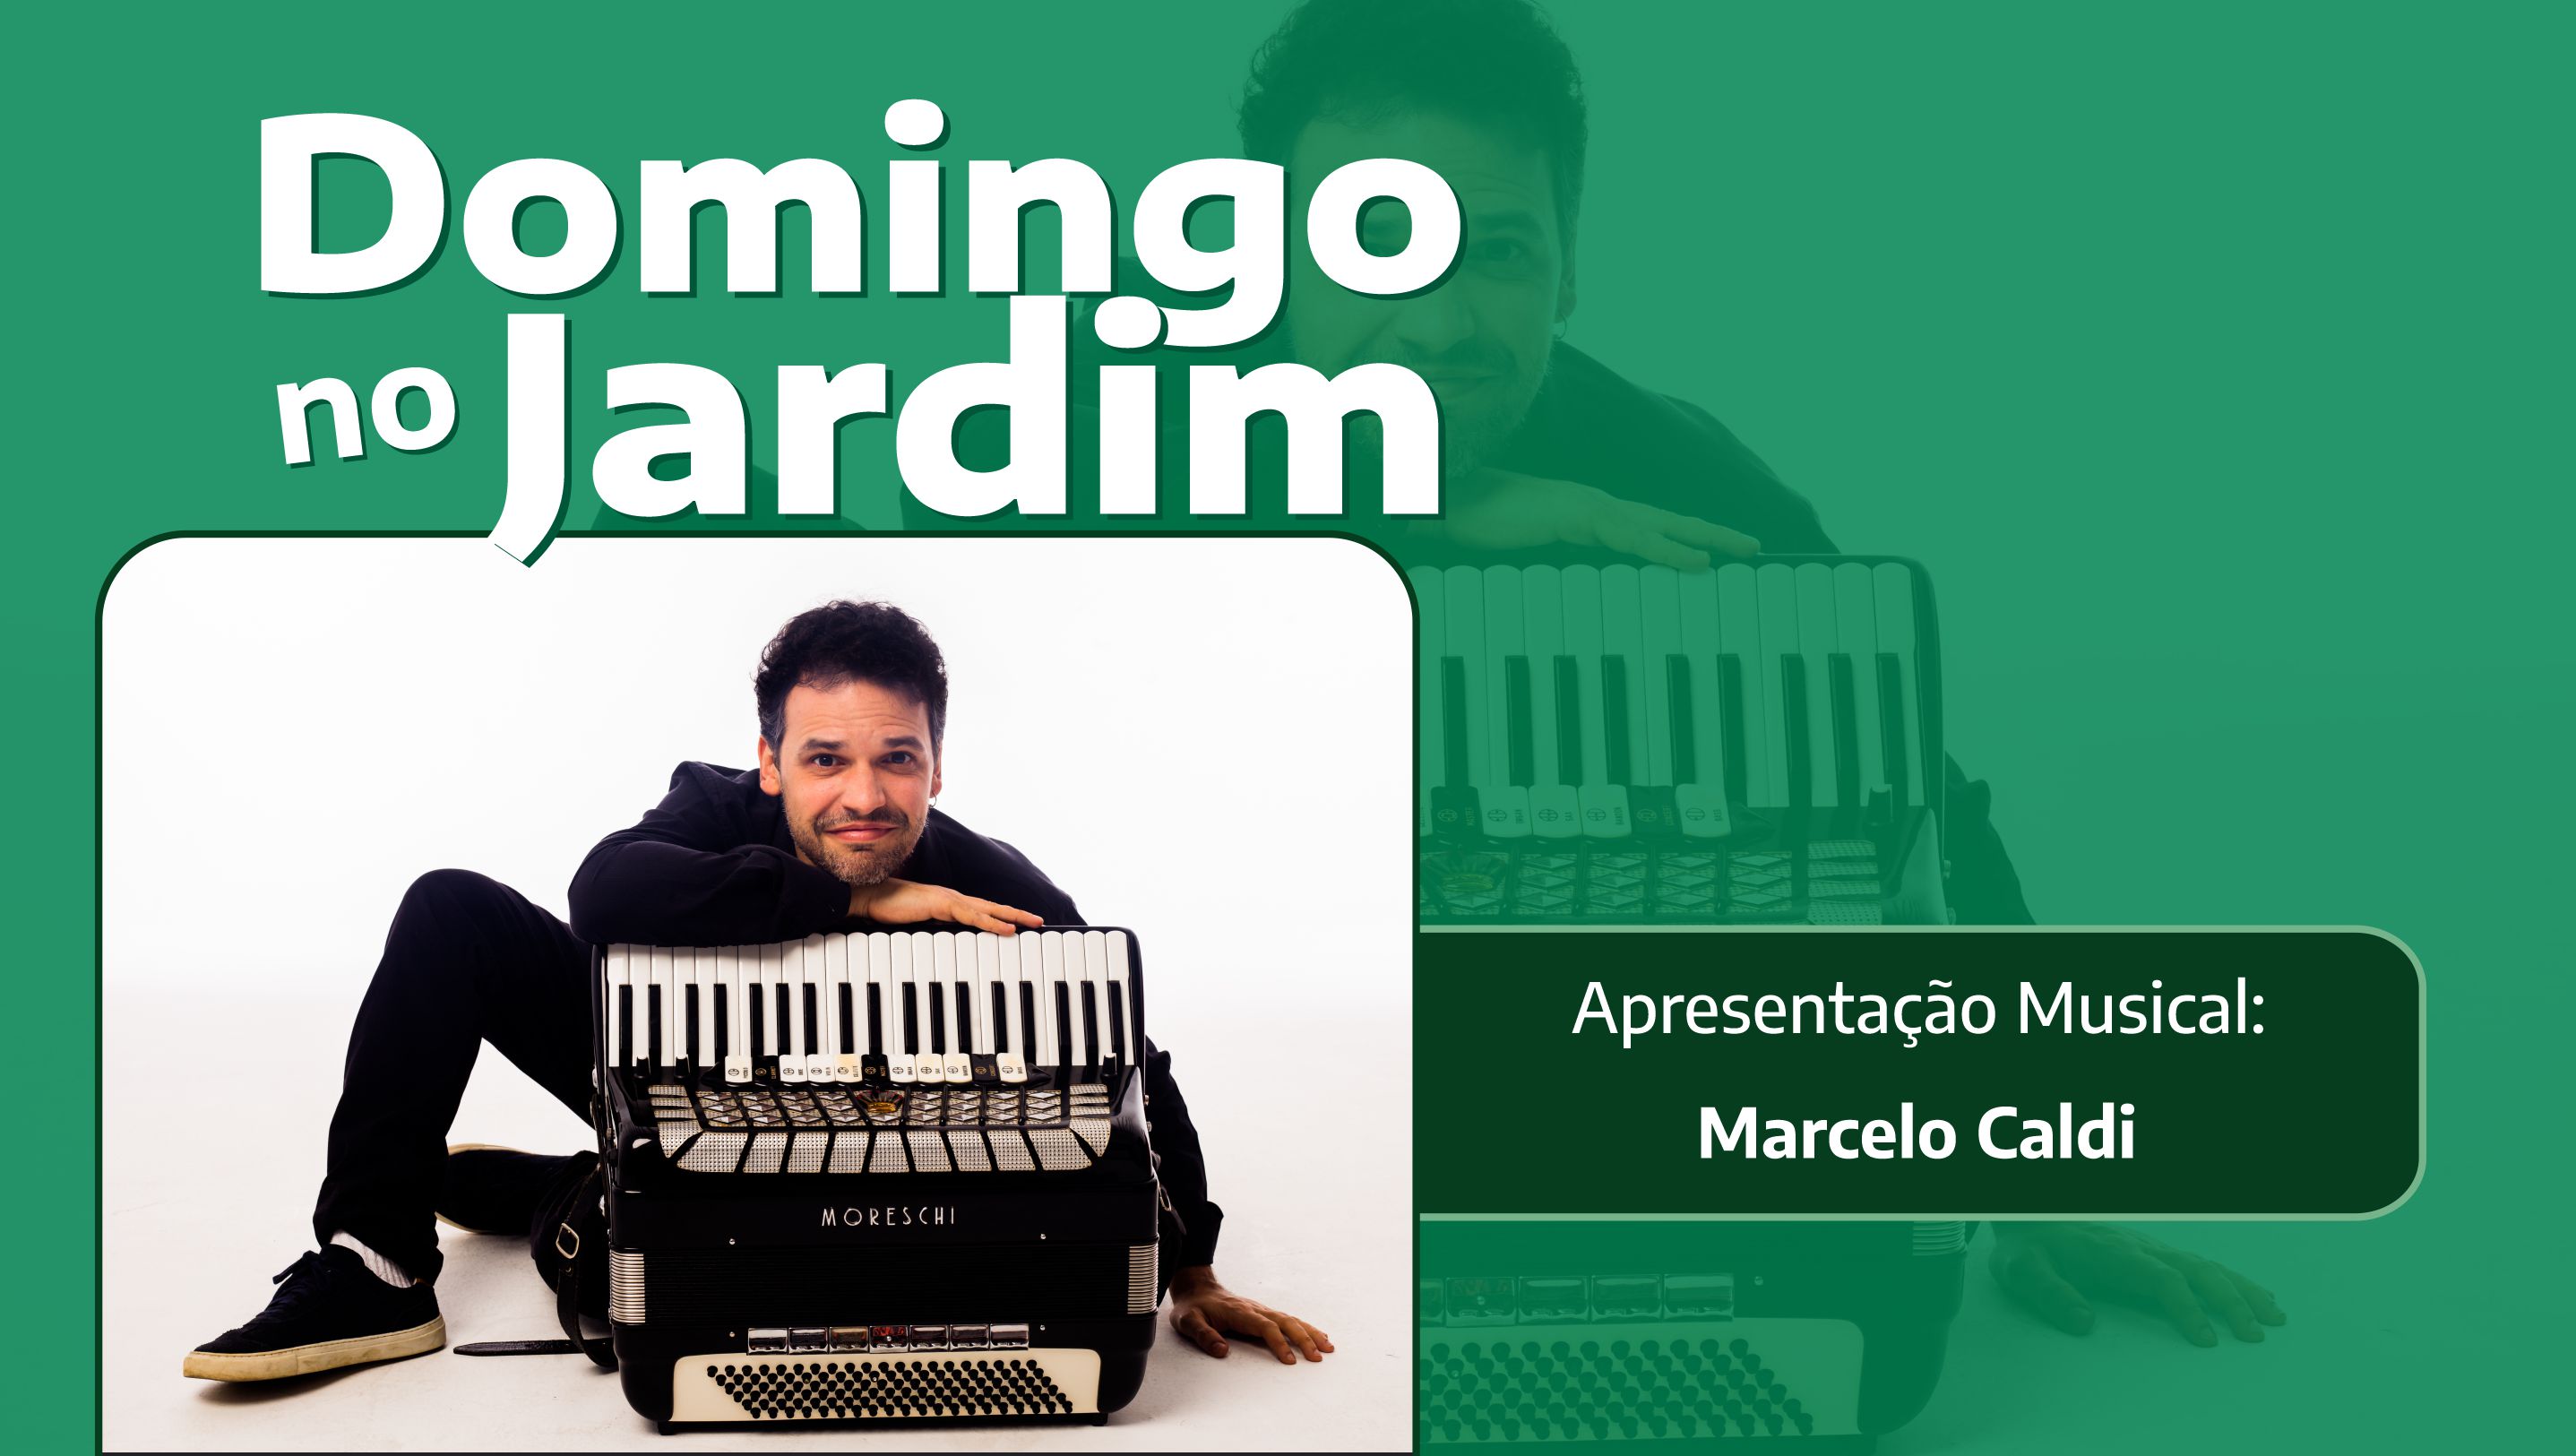 Marcelo Caldi é a atração musical de Domingo no Jardim em 28/4